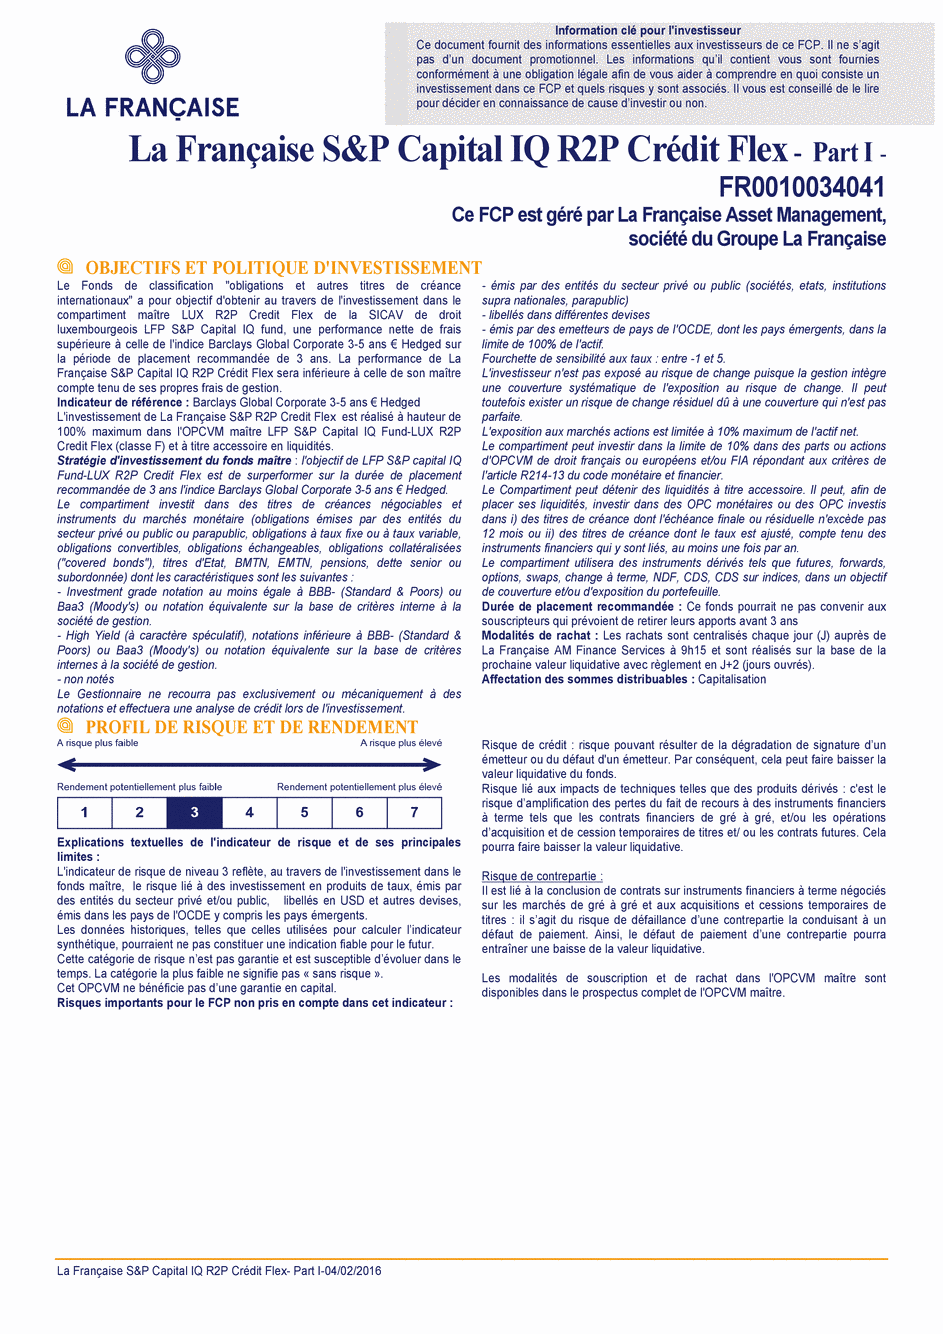 DICI La Française S&P Capital IQ R2P Crédit Flex - Part I - 04/02/2016 - Français